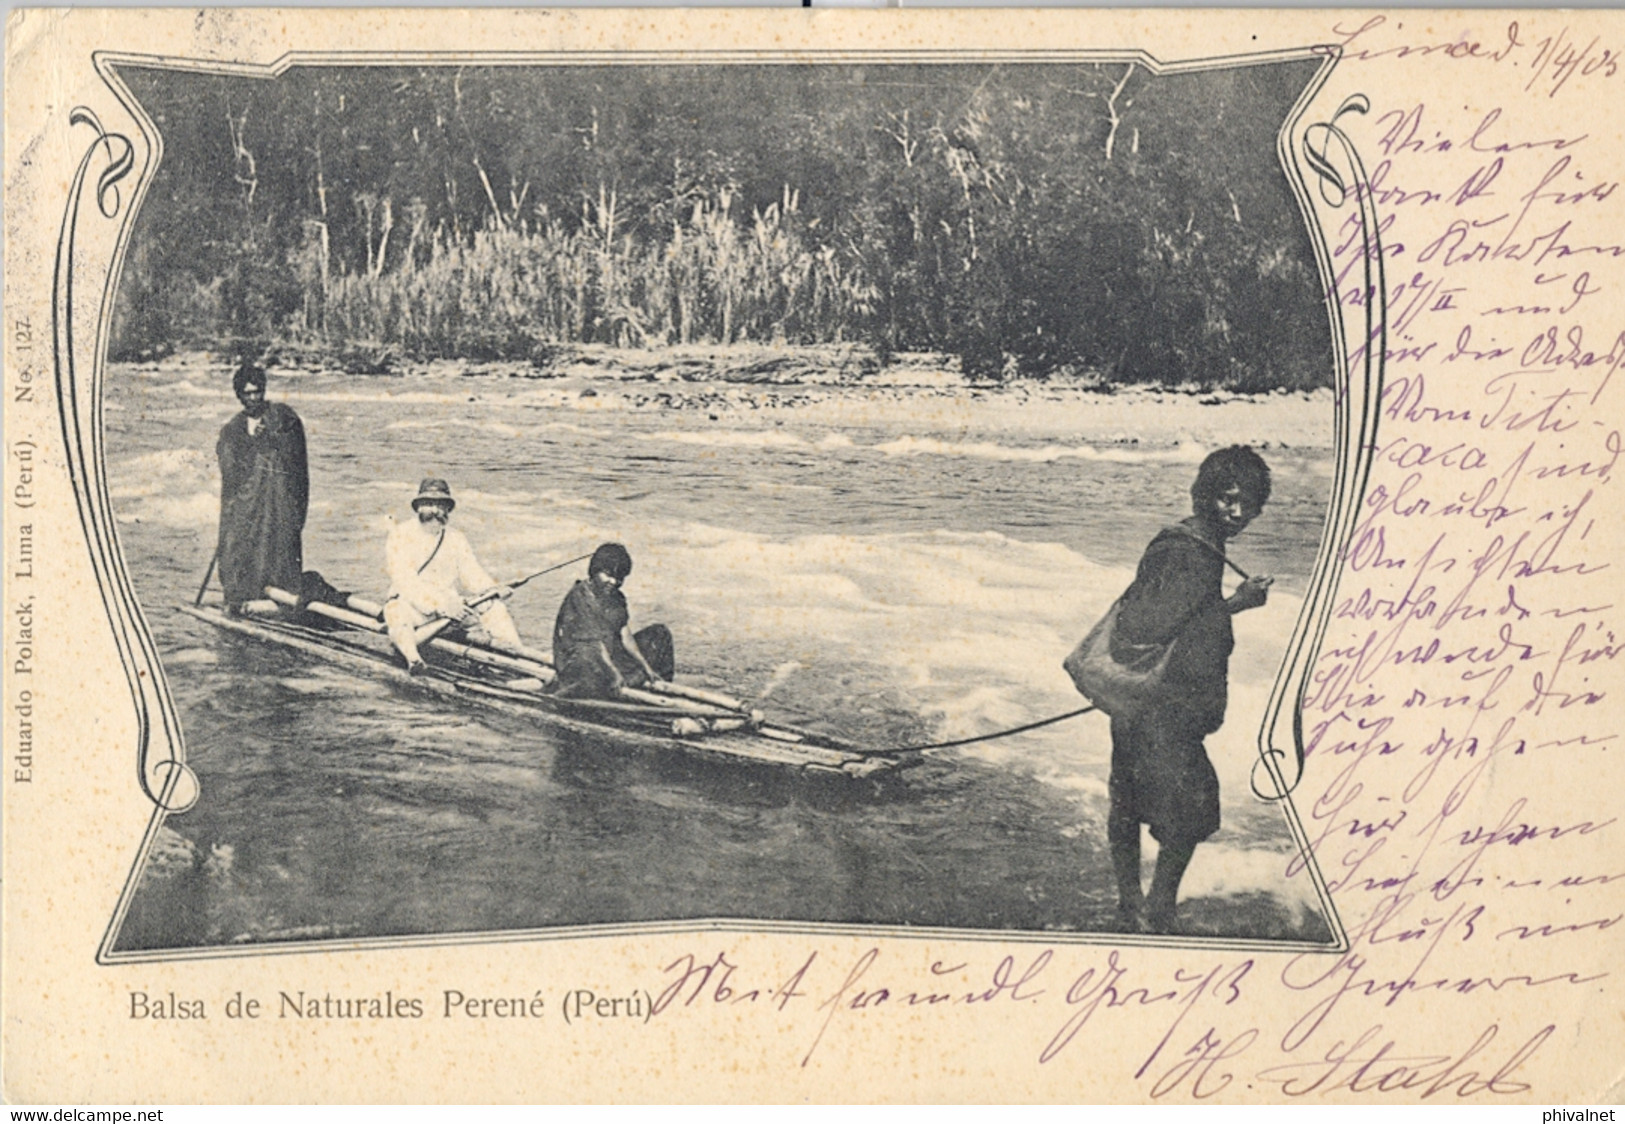 1905 PERÚ , T.P. CIRCULADA , LIMA - BERLIN , LLEGADA , BALSA DE NATURALES PERENÉ - Perú